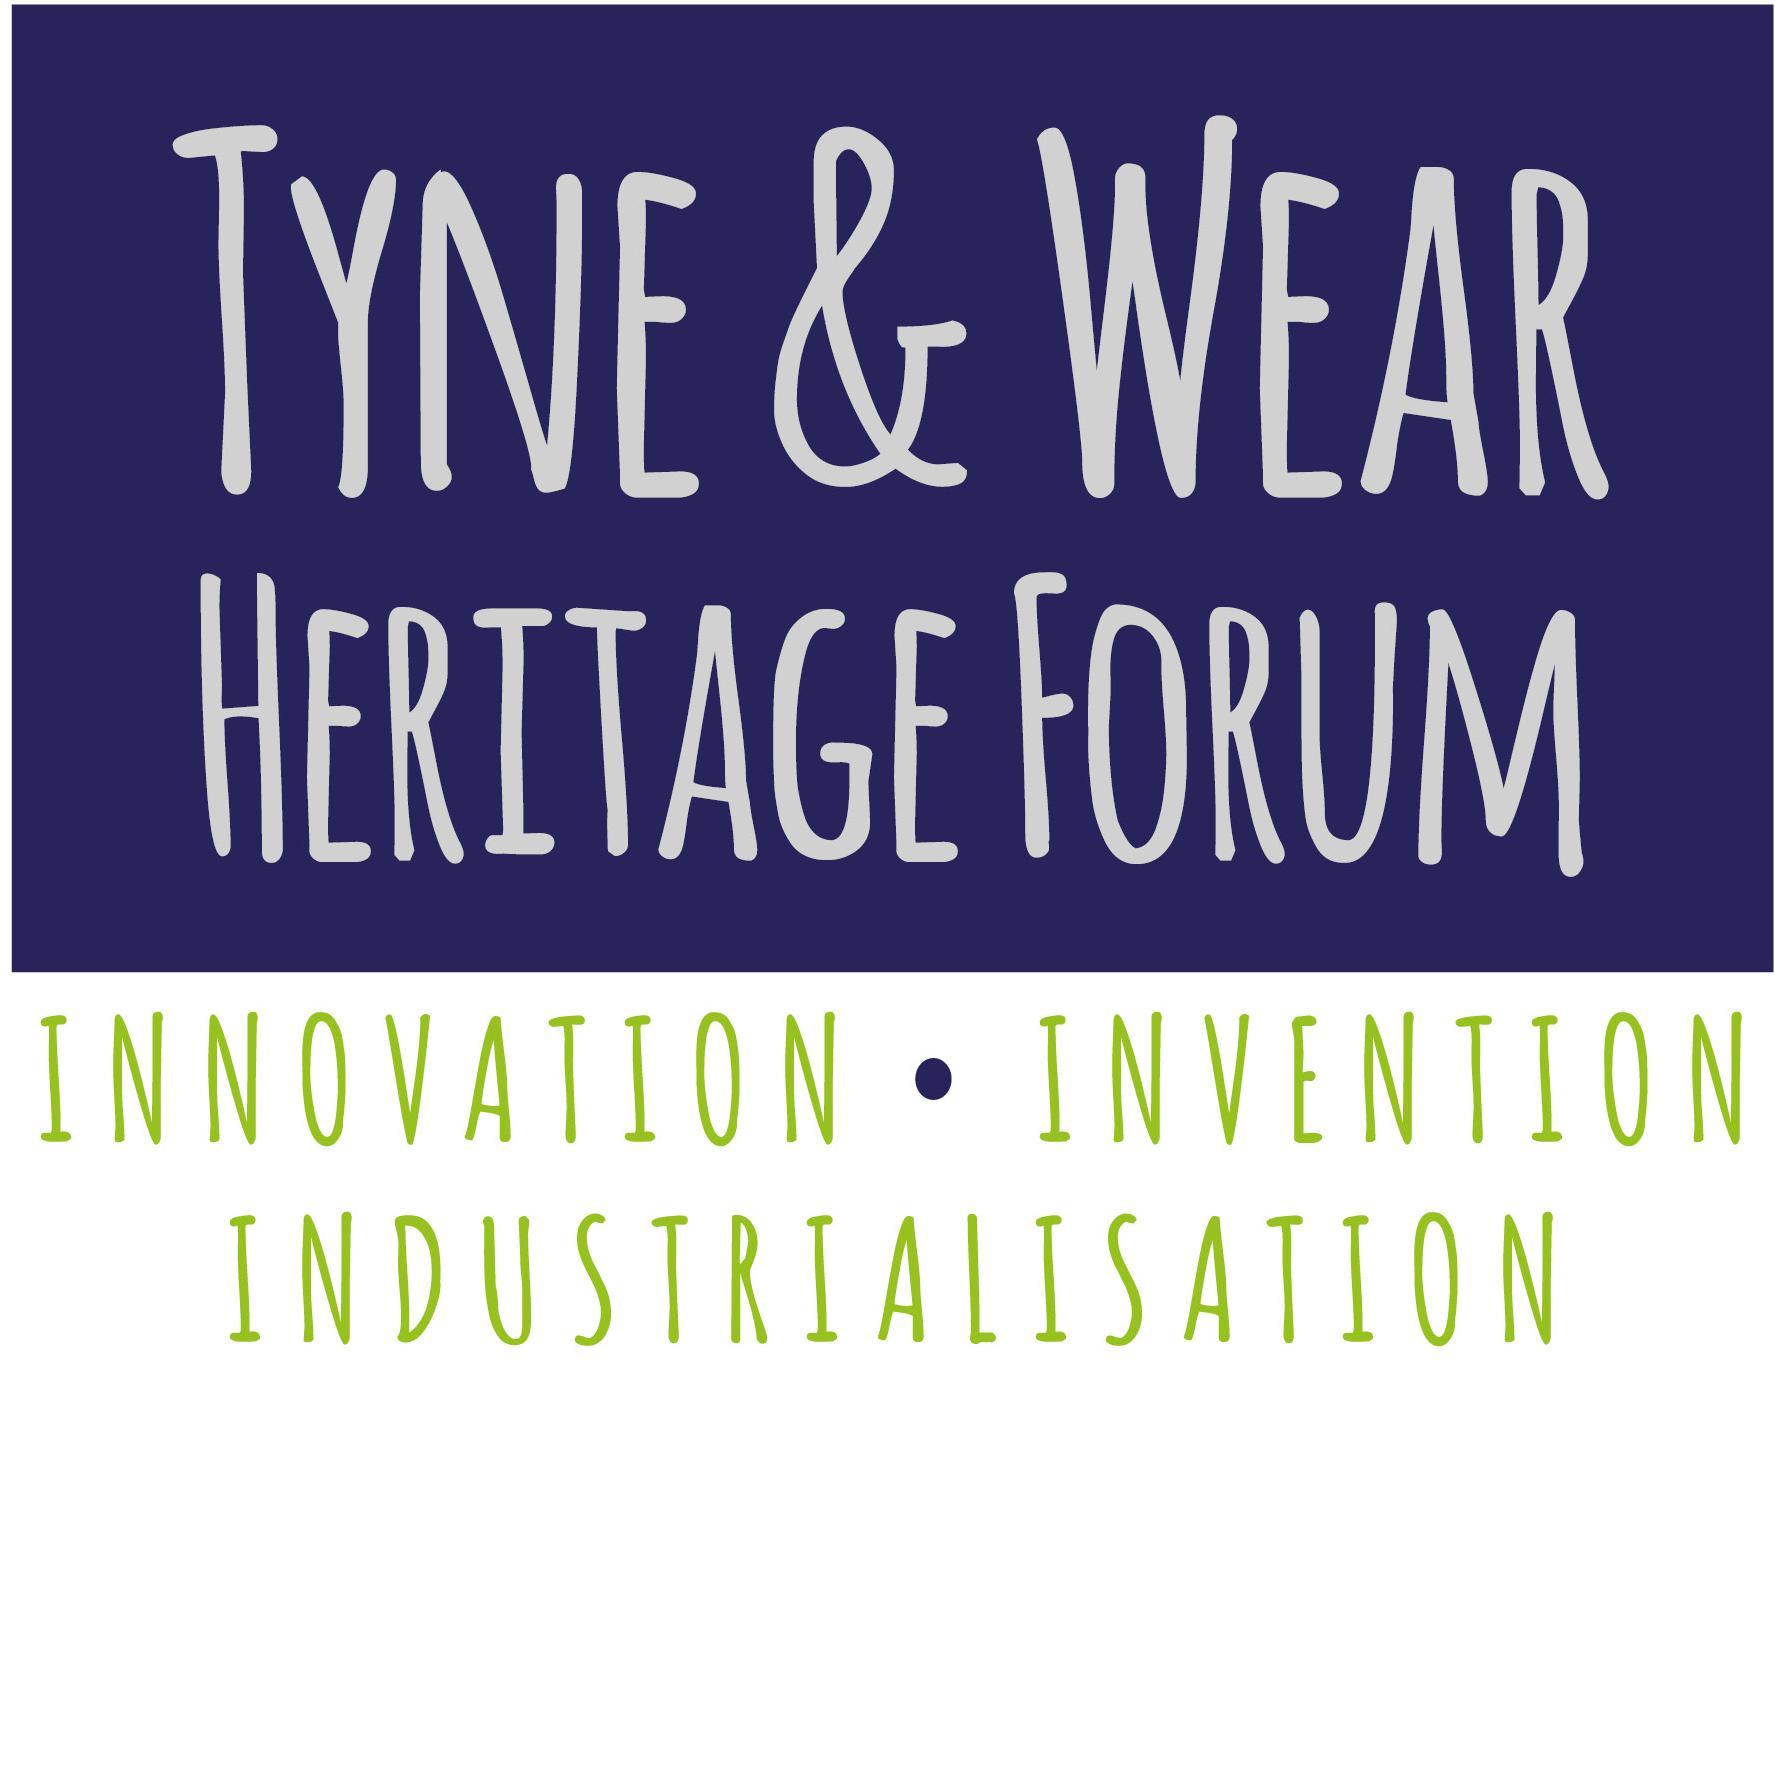 Tyne & Wear Heritage